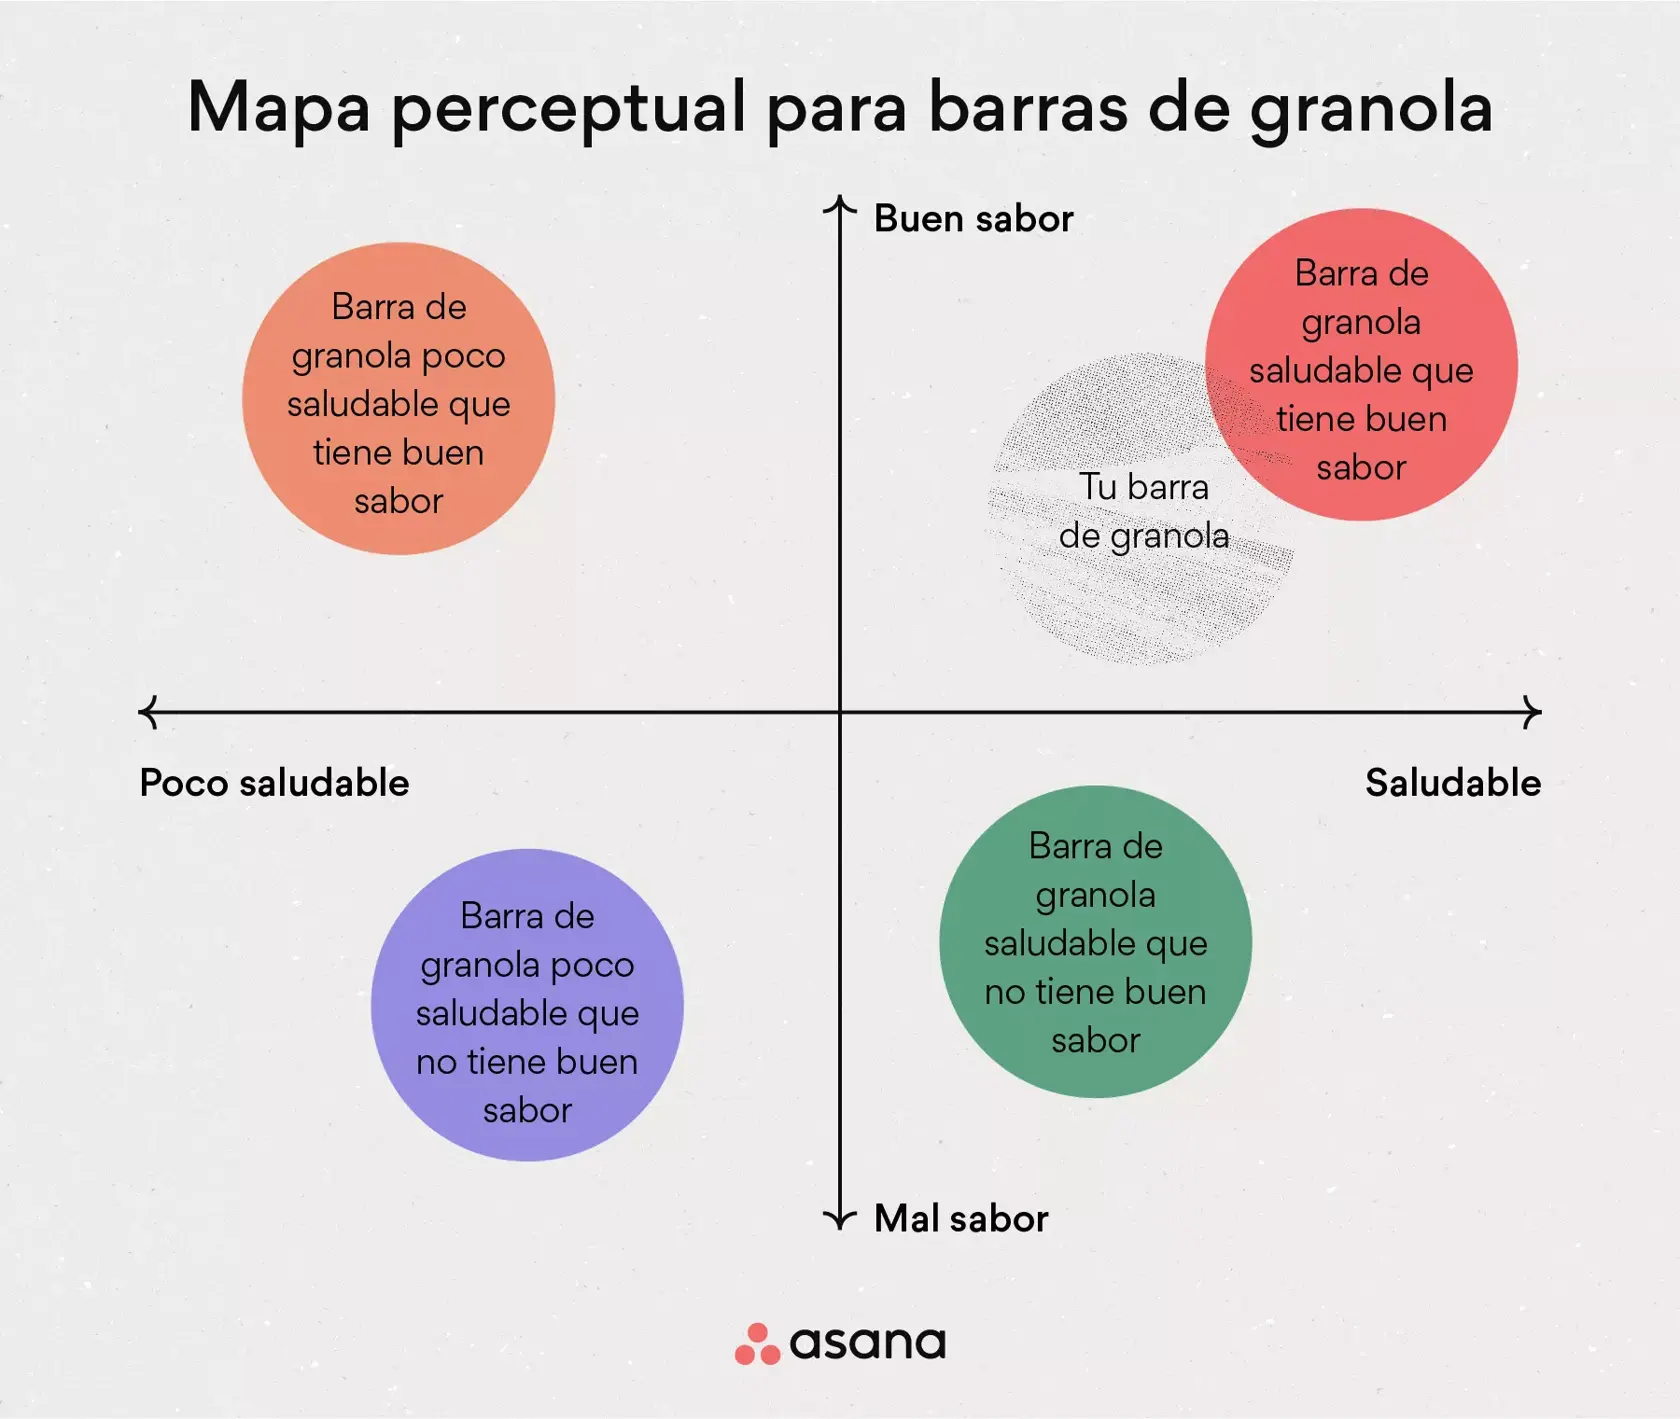 [Ilustración integrada] Mapa perceptual para barras de granola (ejemplo)